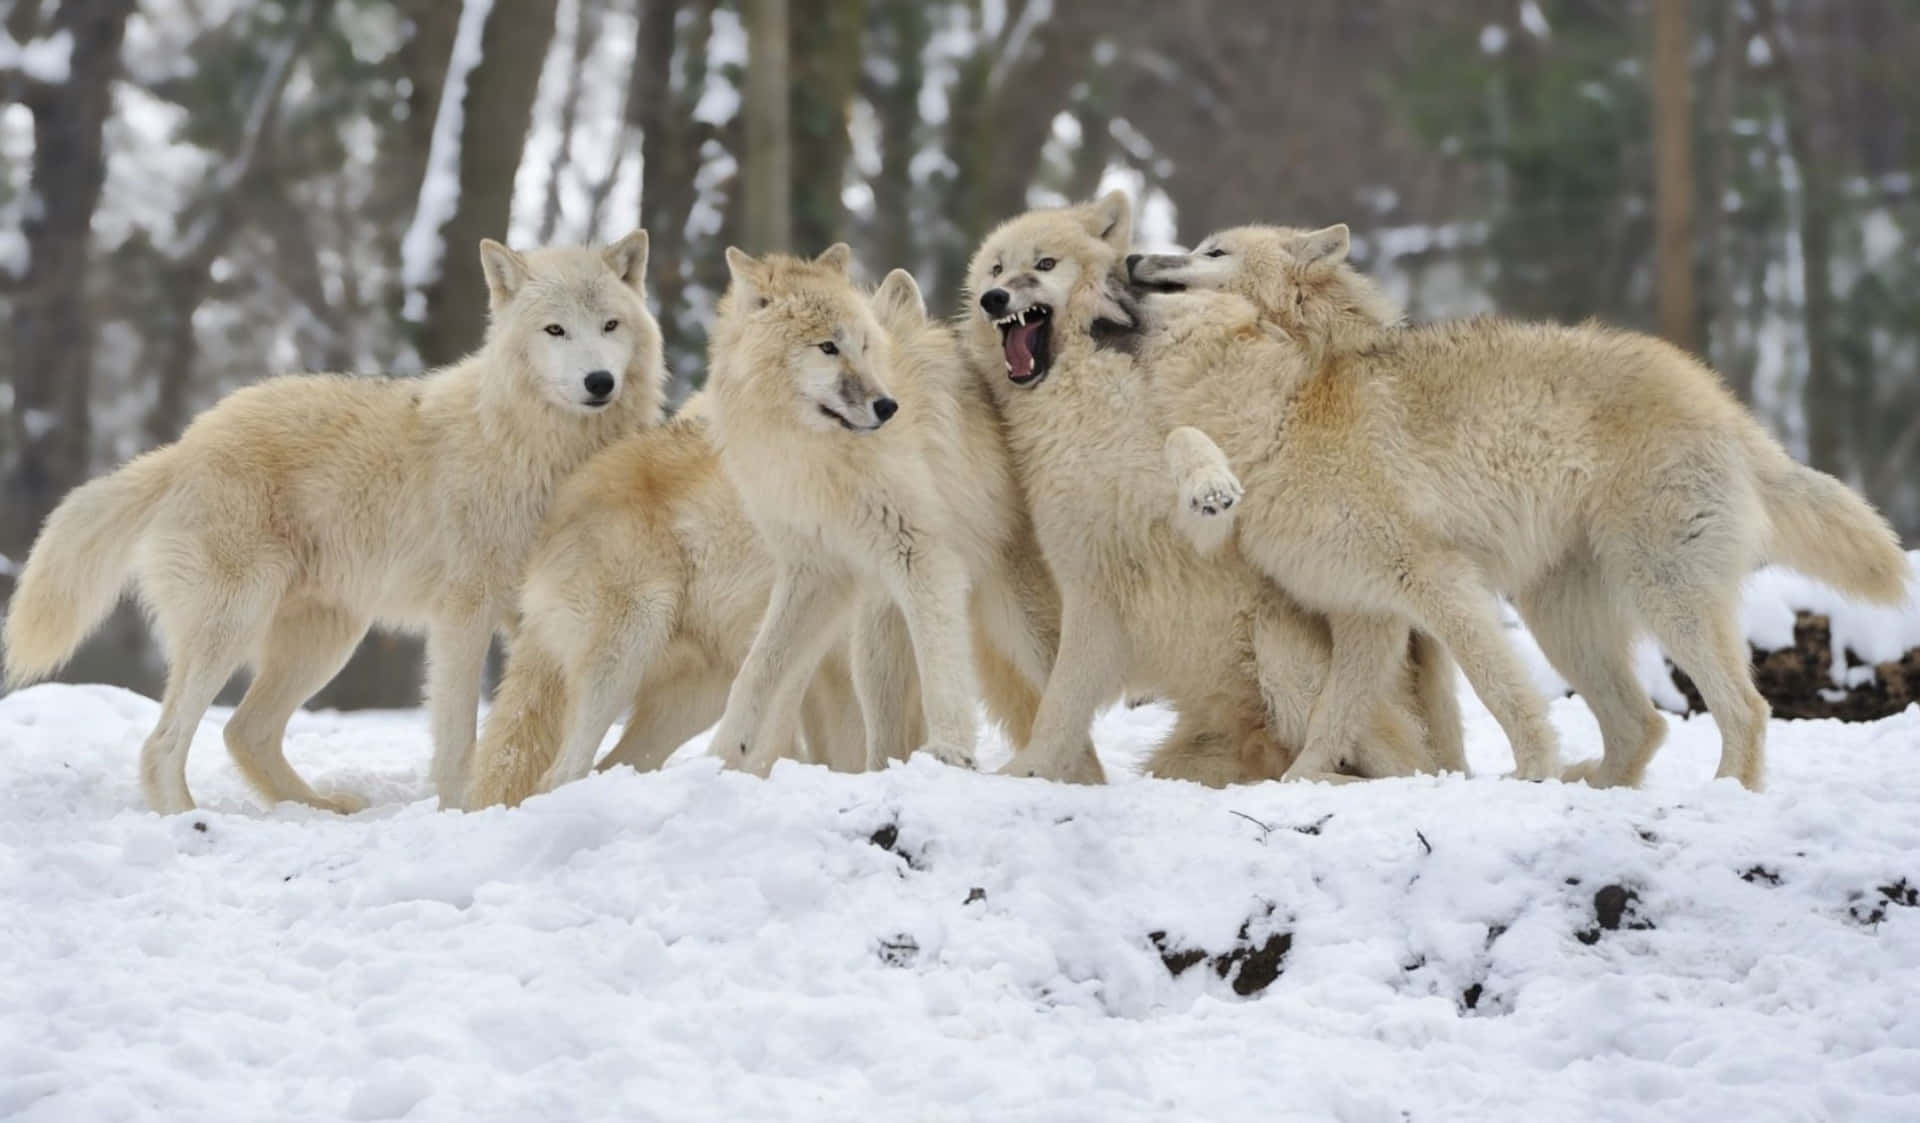 En flok af bestialske udseende ulve venter vagtsomt over et barskt, snefyldt terræn. Wallpaper